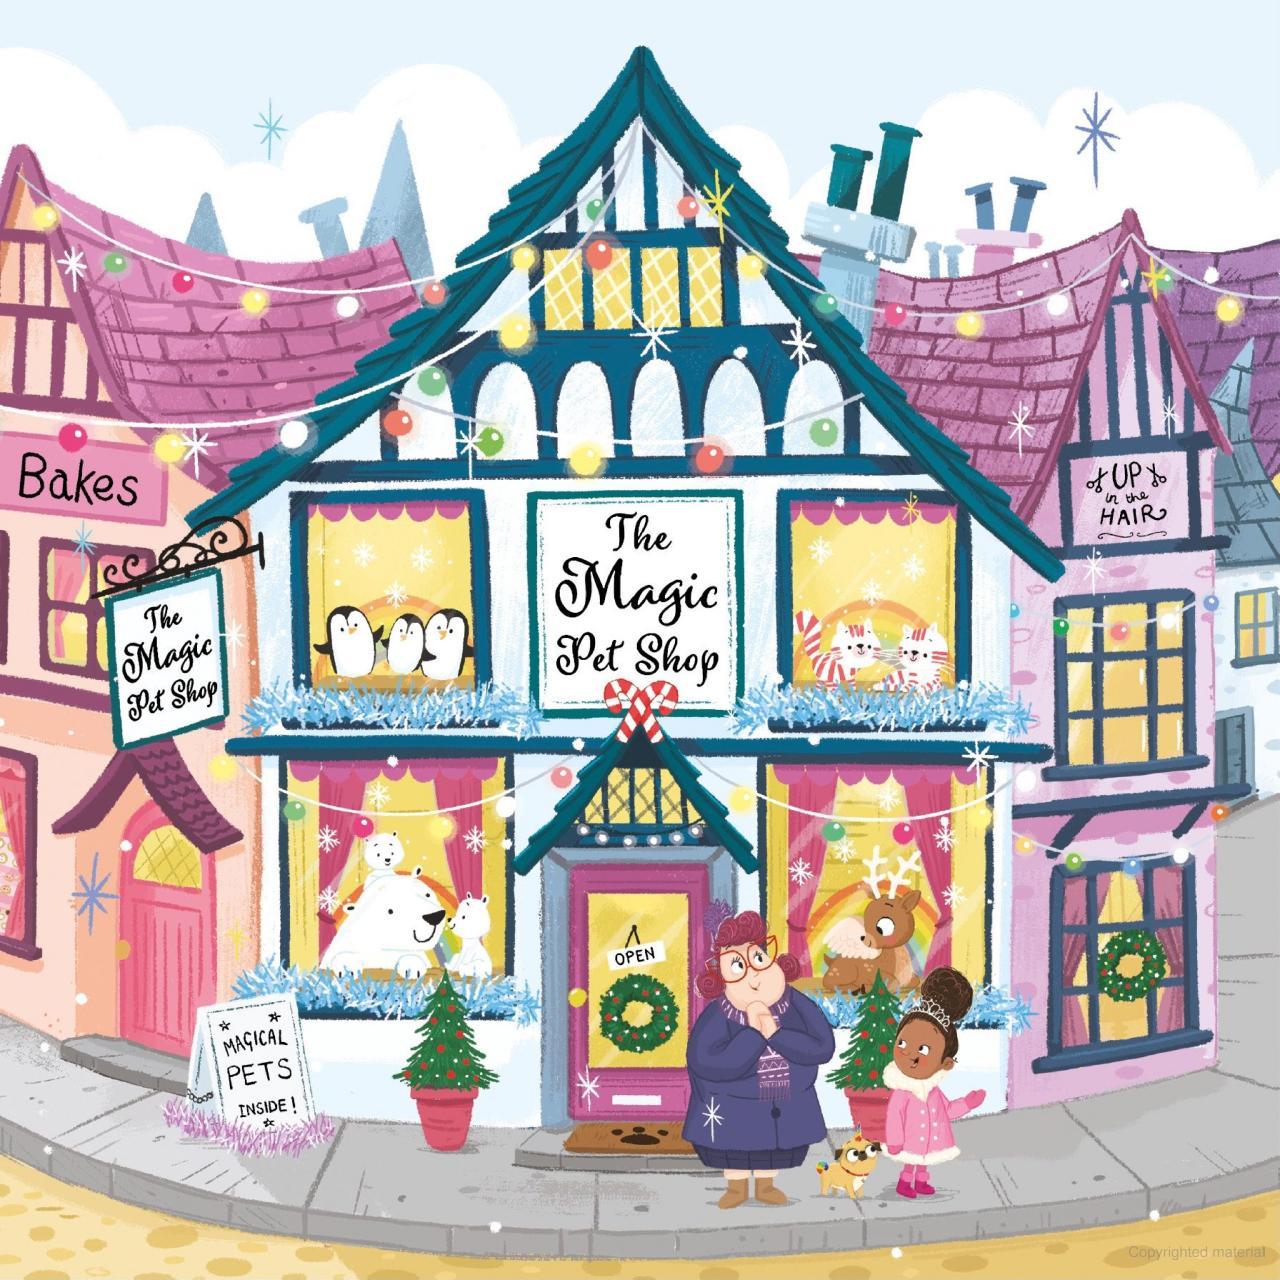 Hình ảnh The Magic Pet Shop: Pugicorn And The Christmas Wish